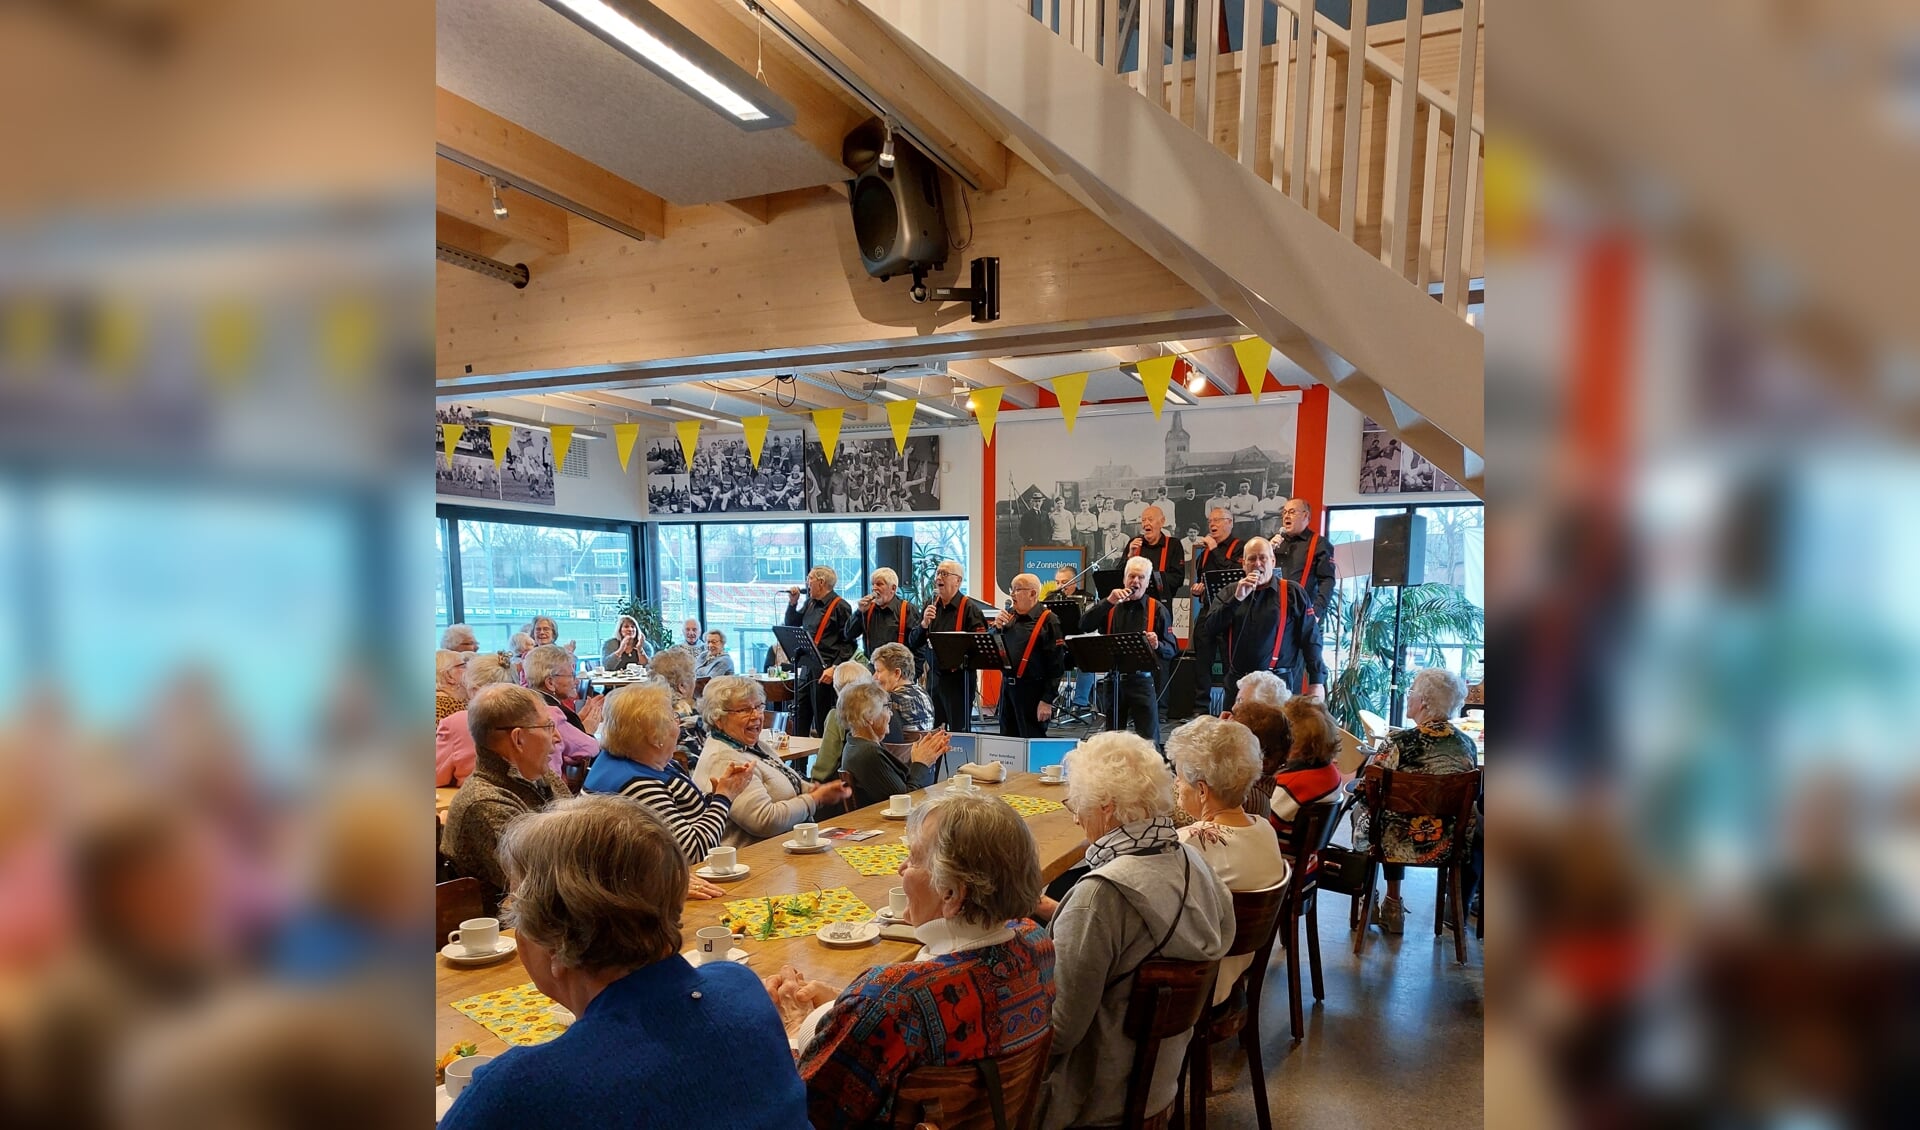 Gezelligheid en verbinding troef op het jubileumfeest van de Zonnebloem afdelingen Westzaan en Assendelft dat onlangs werd gehouden.   